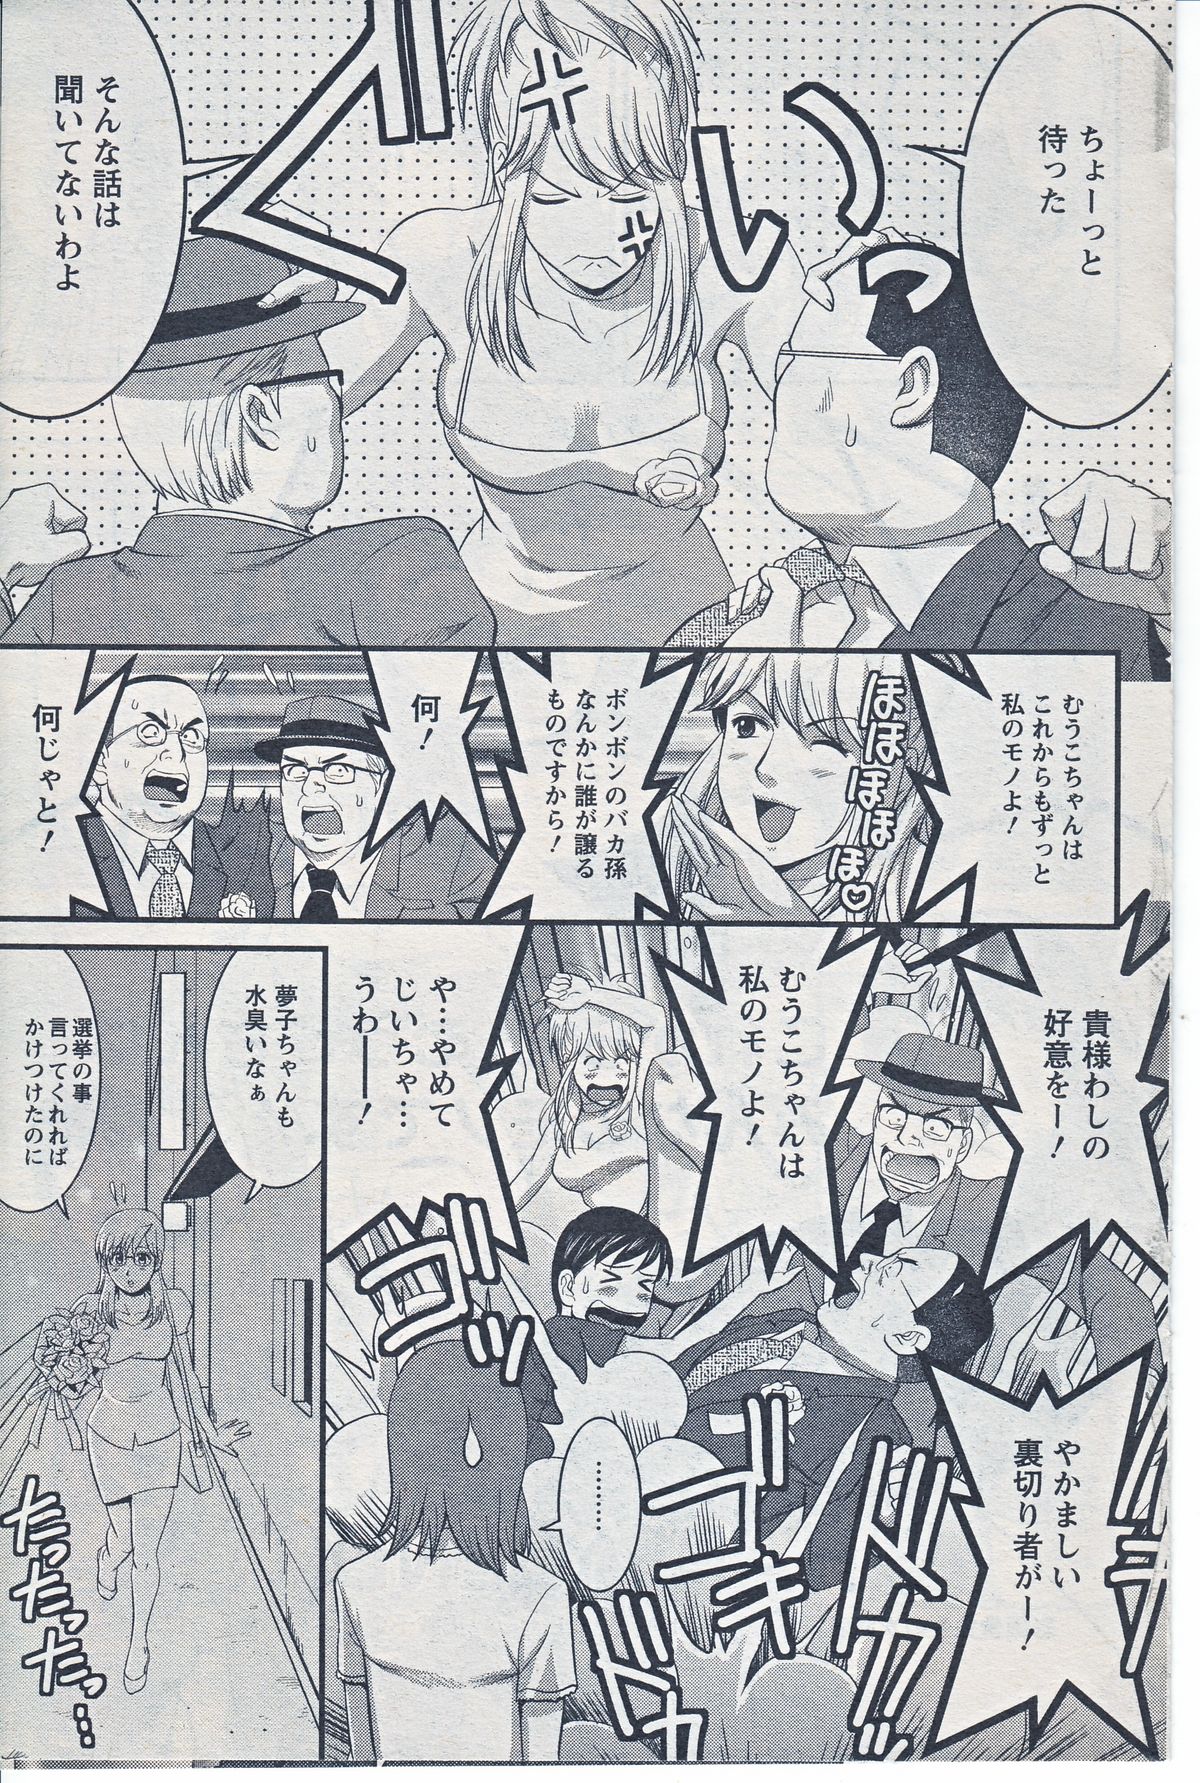 [Saigado] Haken no Muuko-san 20 page 19 full